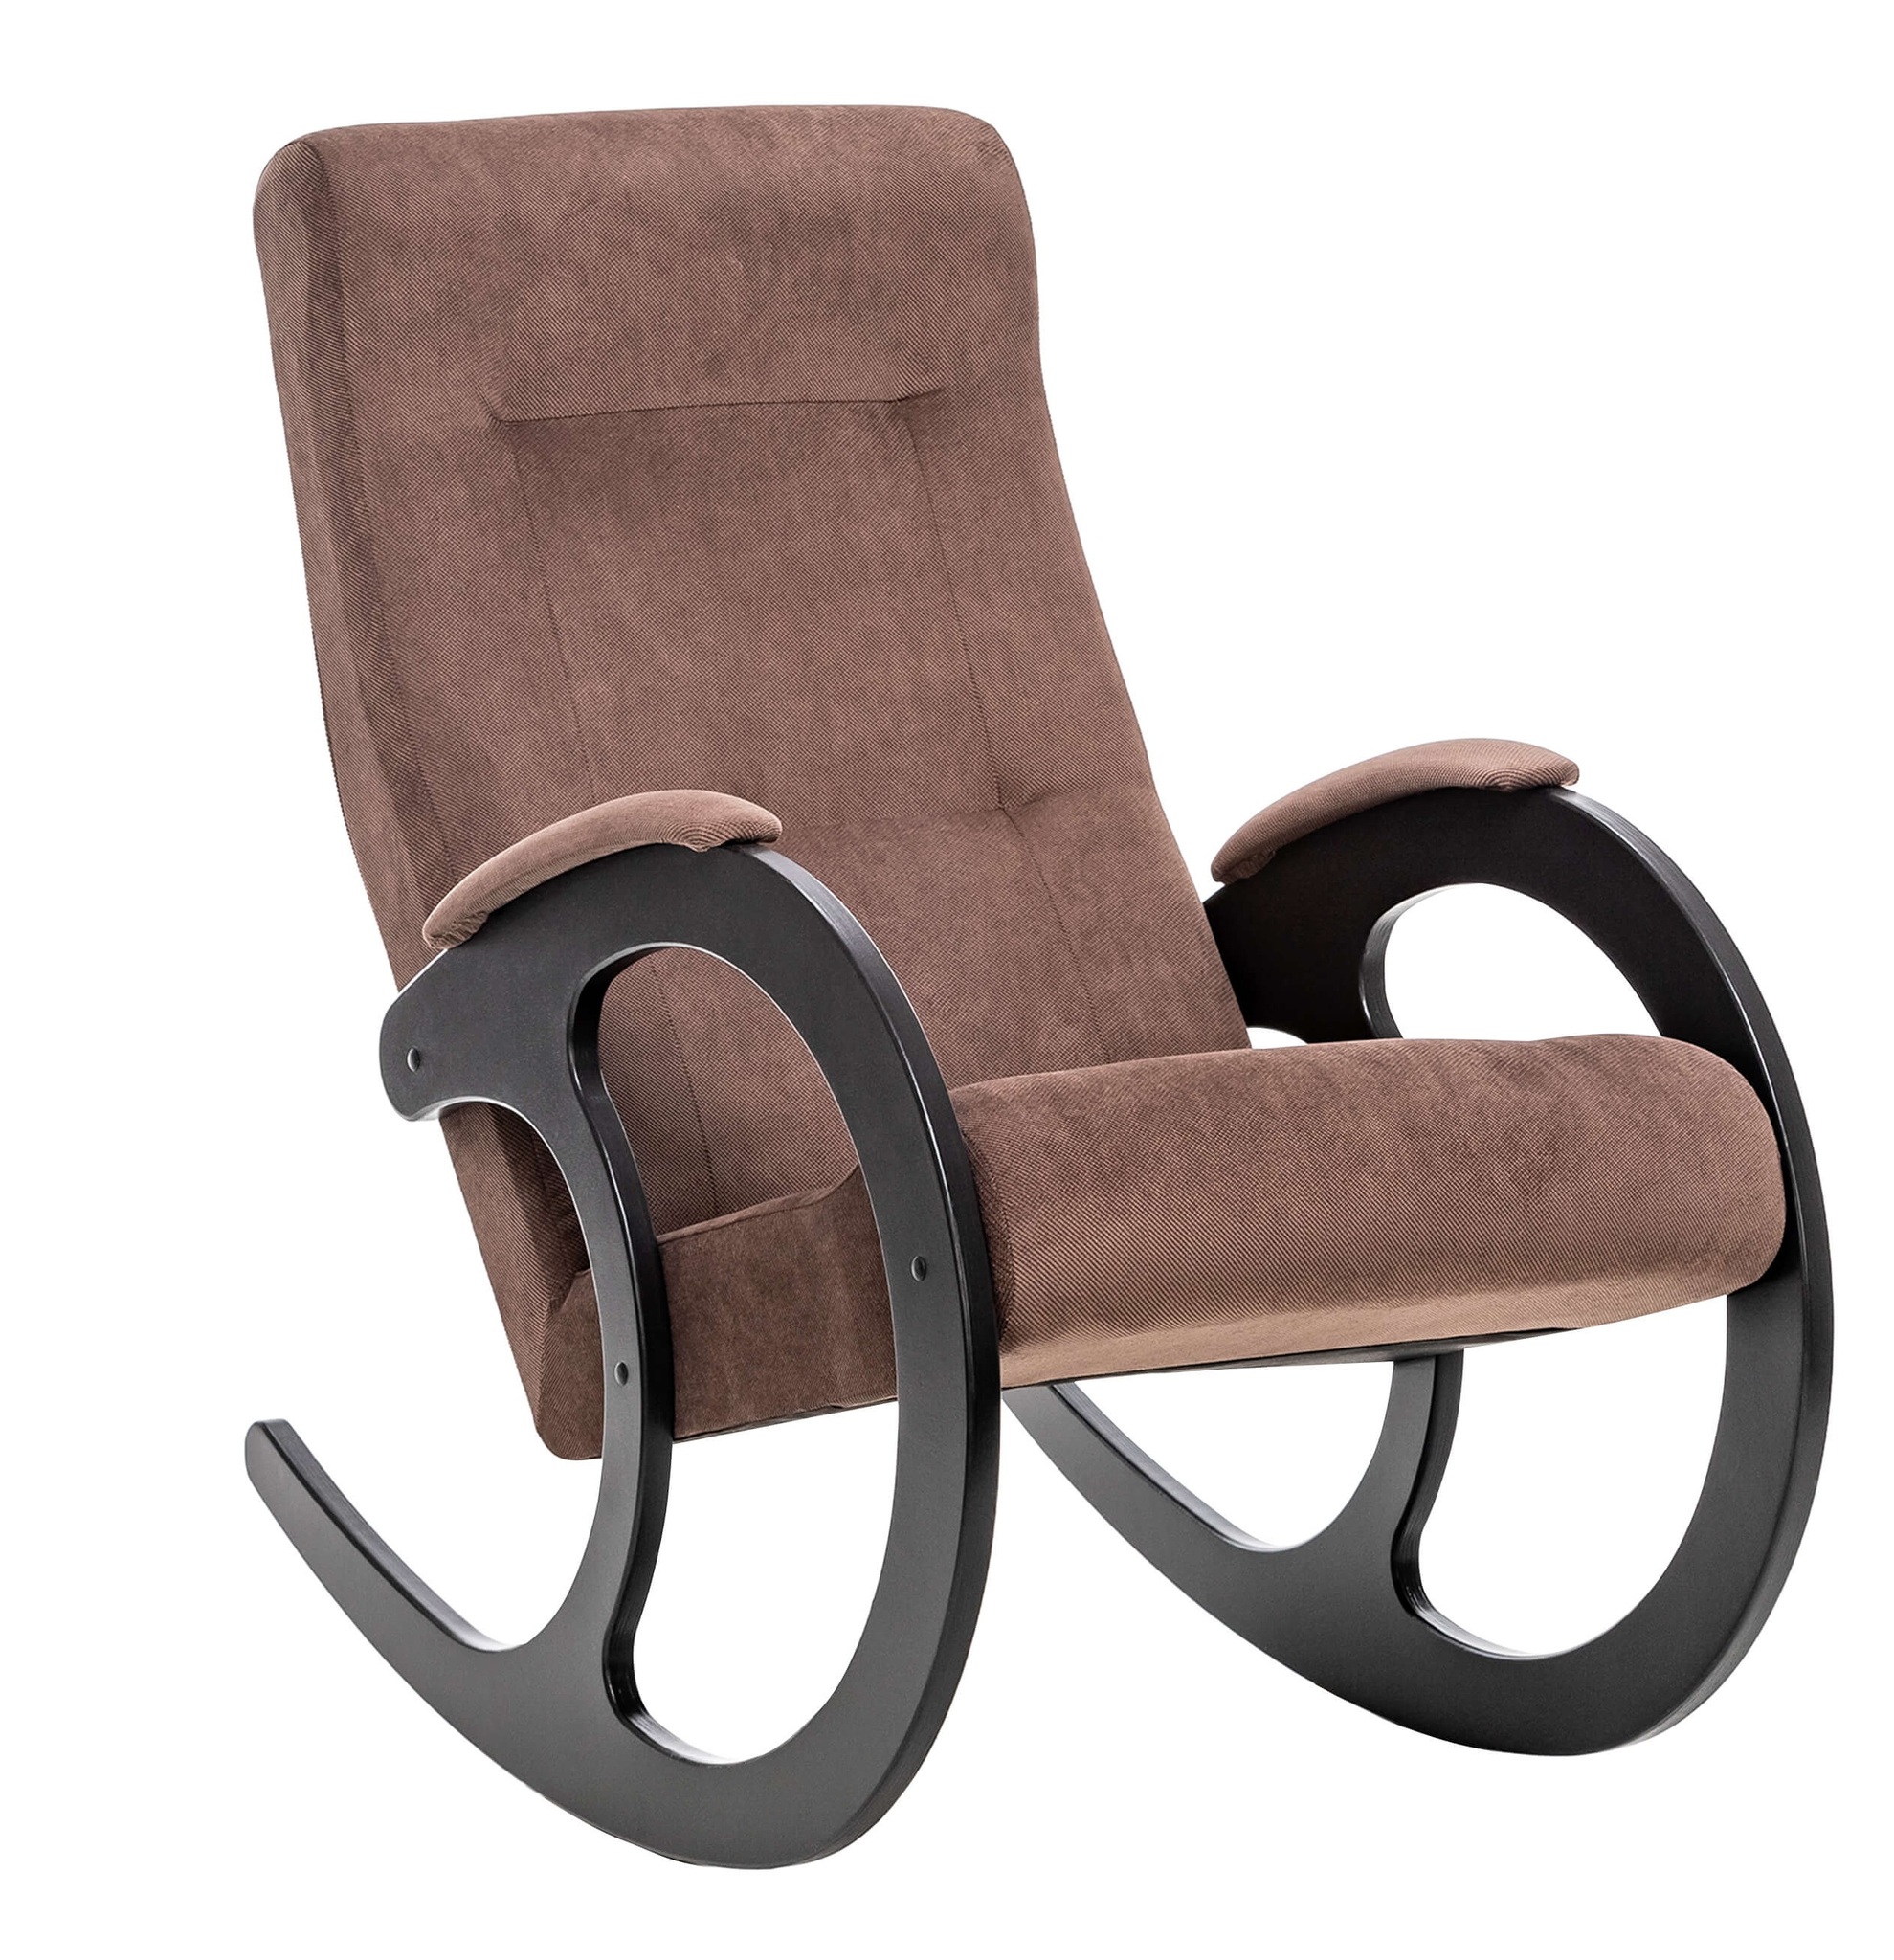 Дизайнерские кресла-качалки онлайн продажа |вороковский.рф ®